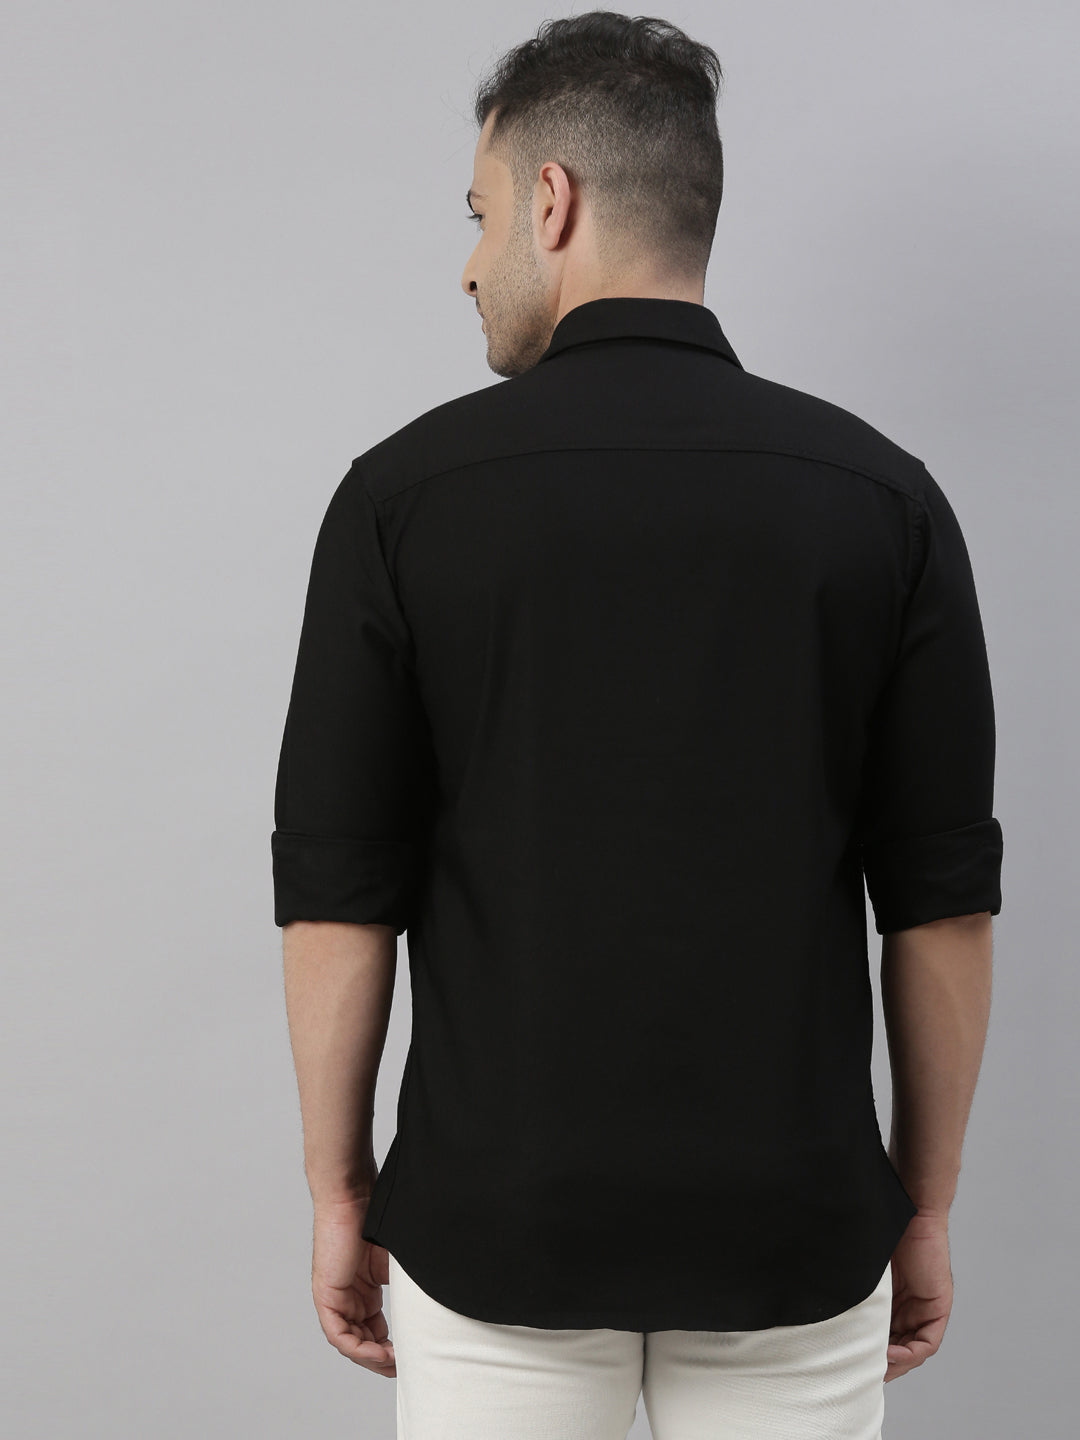 Black Solid Casual Shirt Solid Shirt Bushirt   